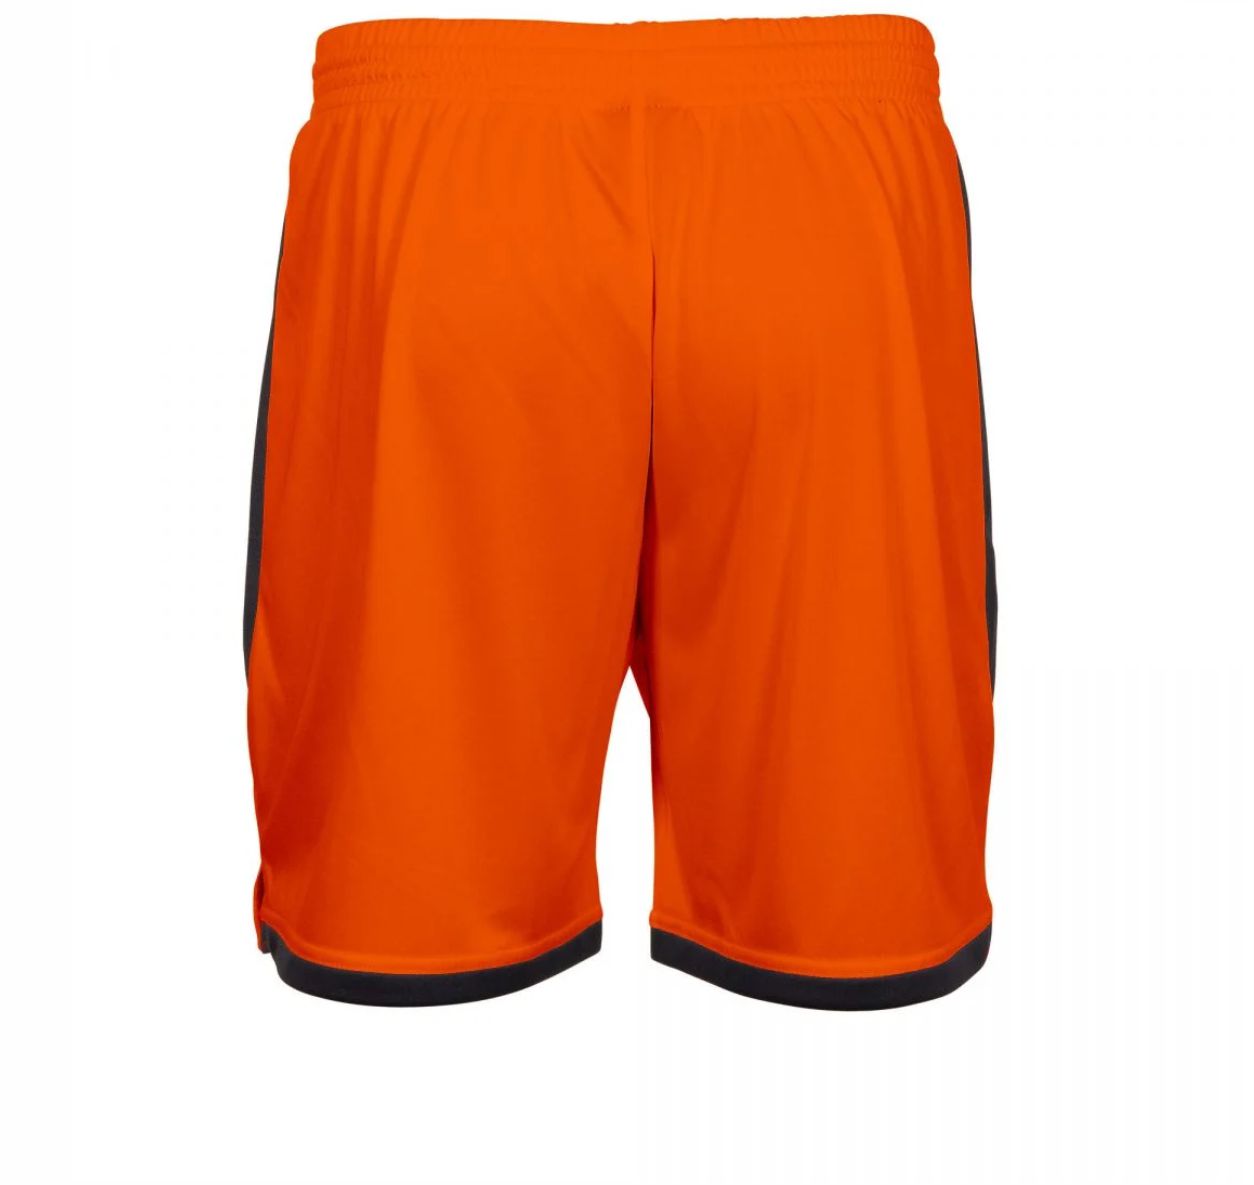 Stanno - Focus Shorts - Orange & Black